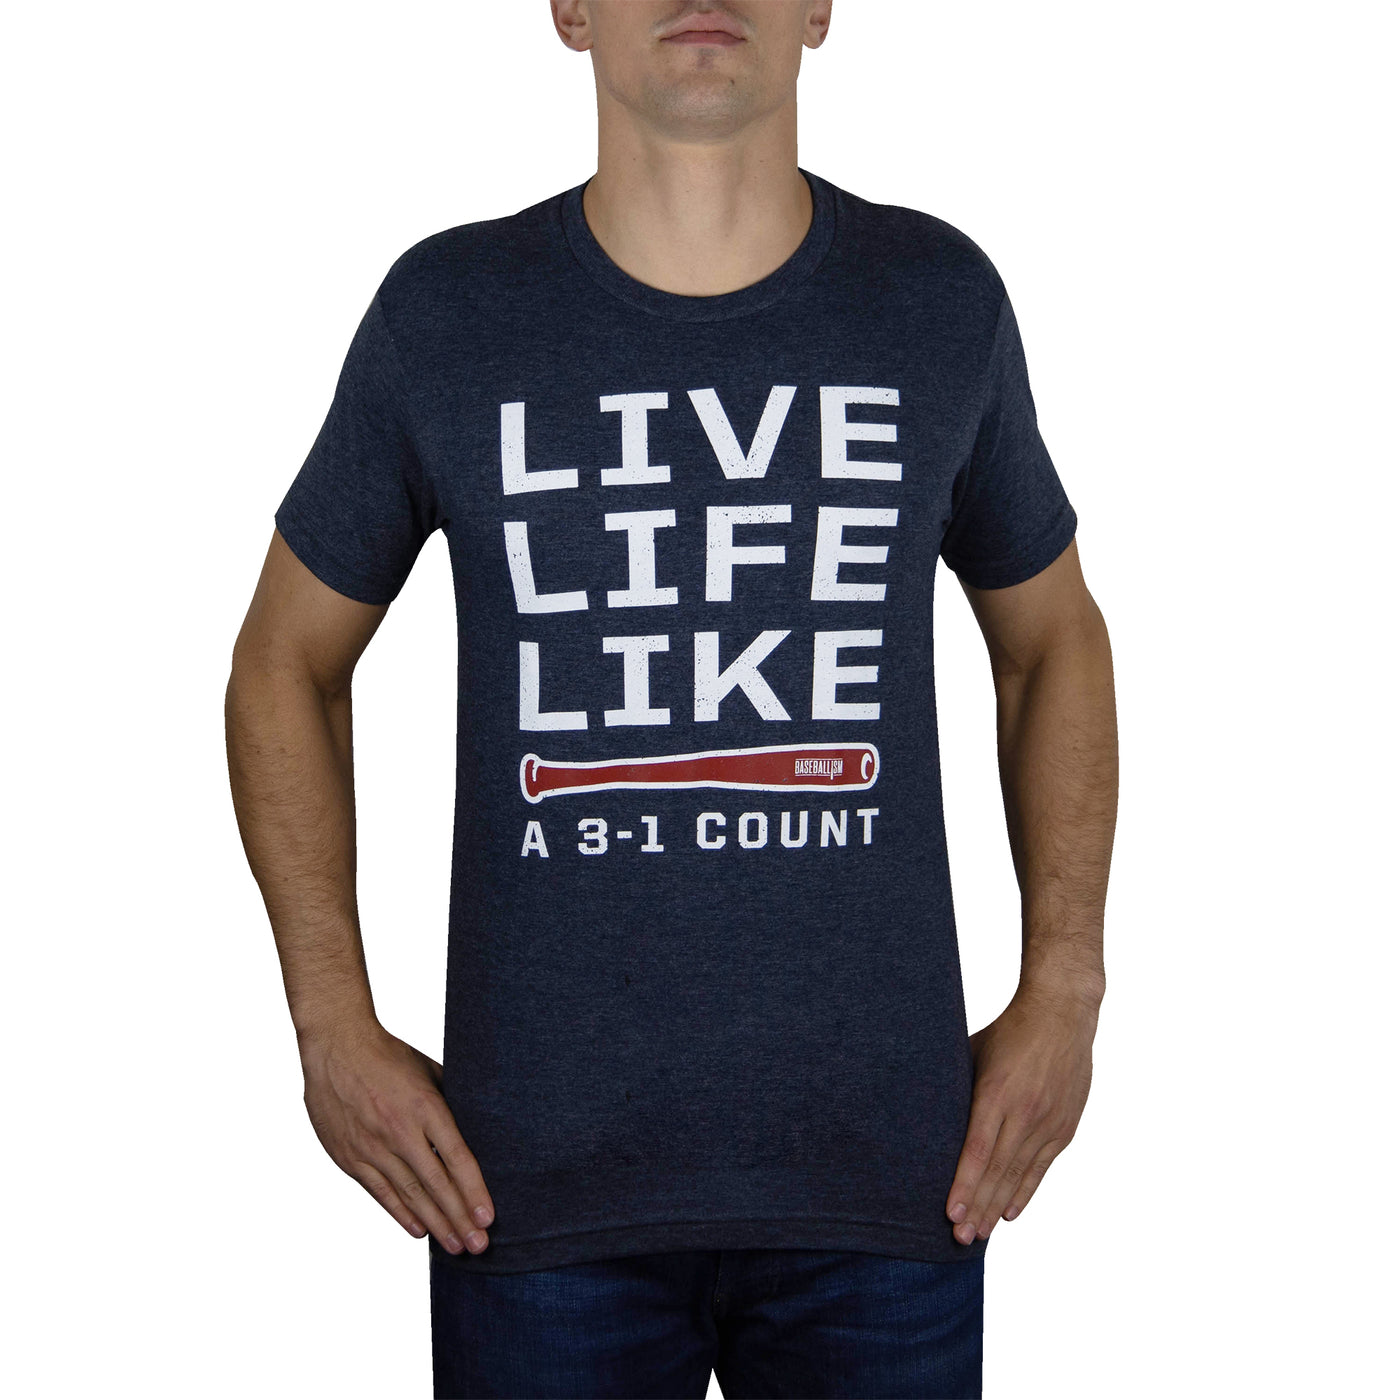 Live Life Like a 3-1 Count - 2.0